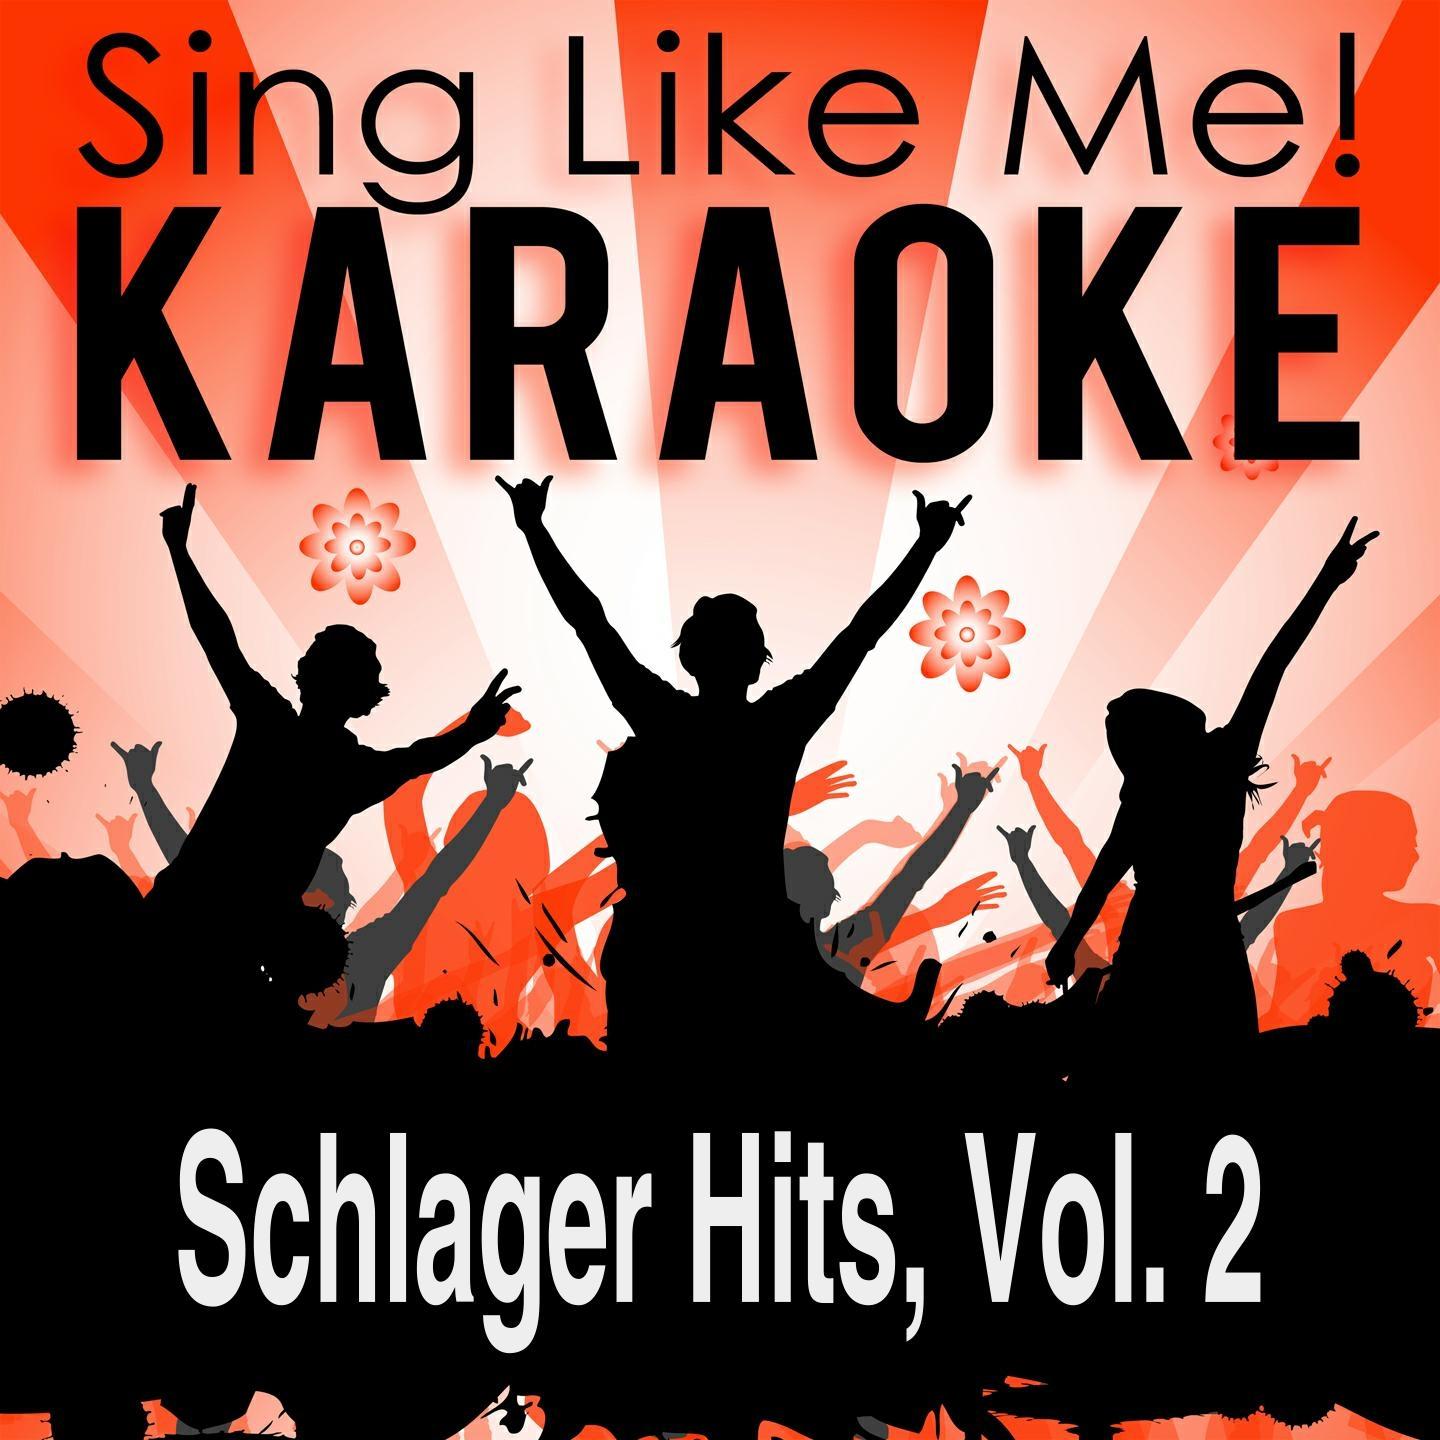 Ein K nigreich fü r deine Liebe Fox Mix Karaoke Version With Guide Melody Originally Performed By Alexander Ferro